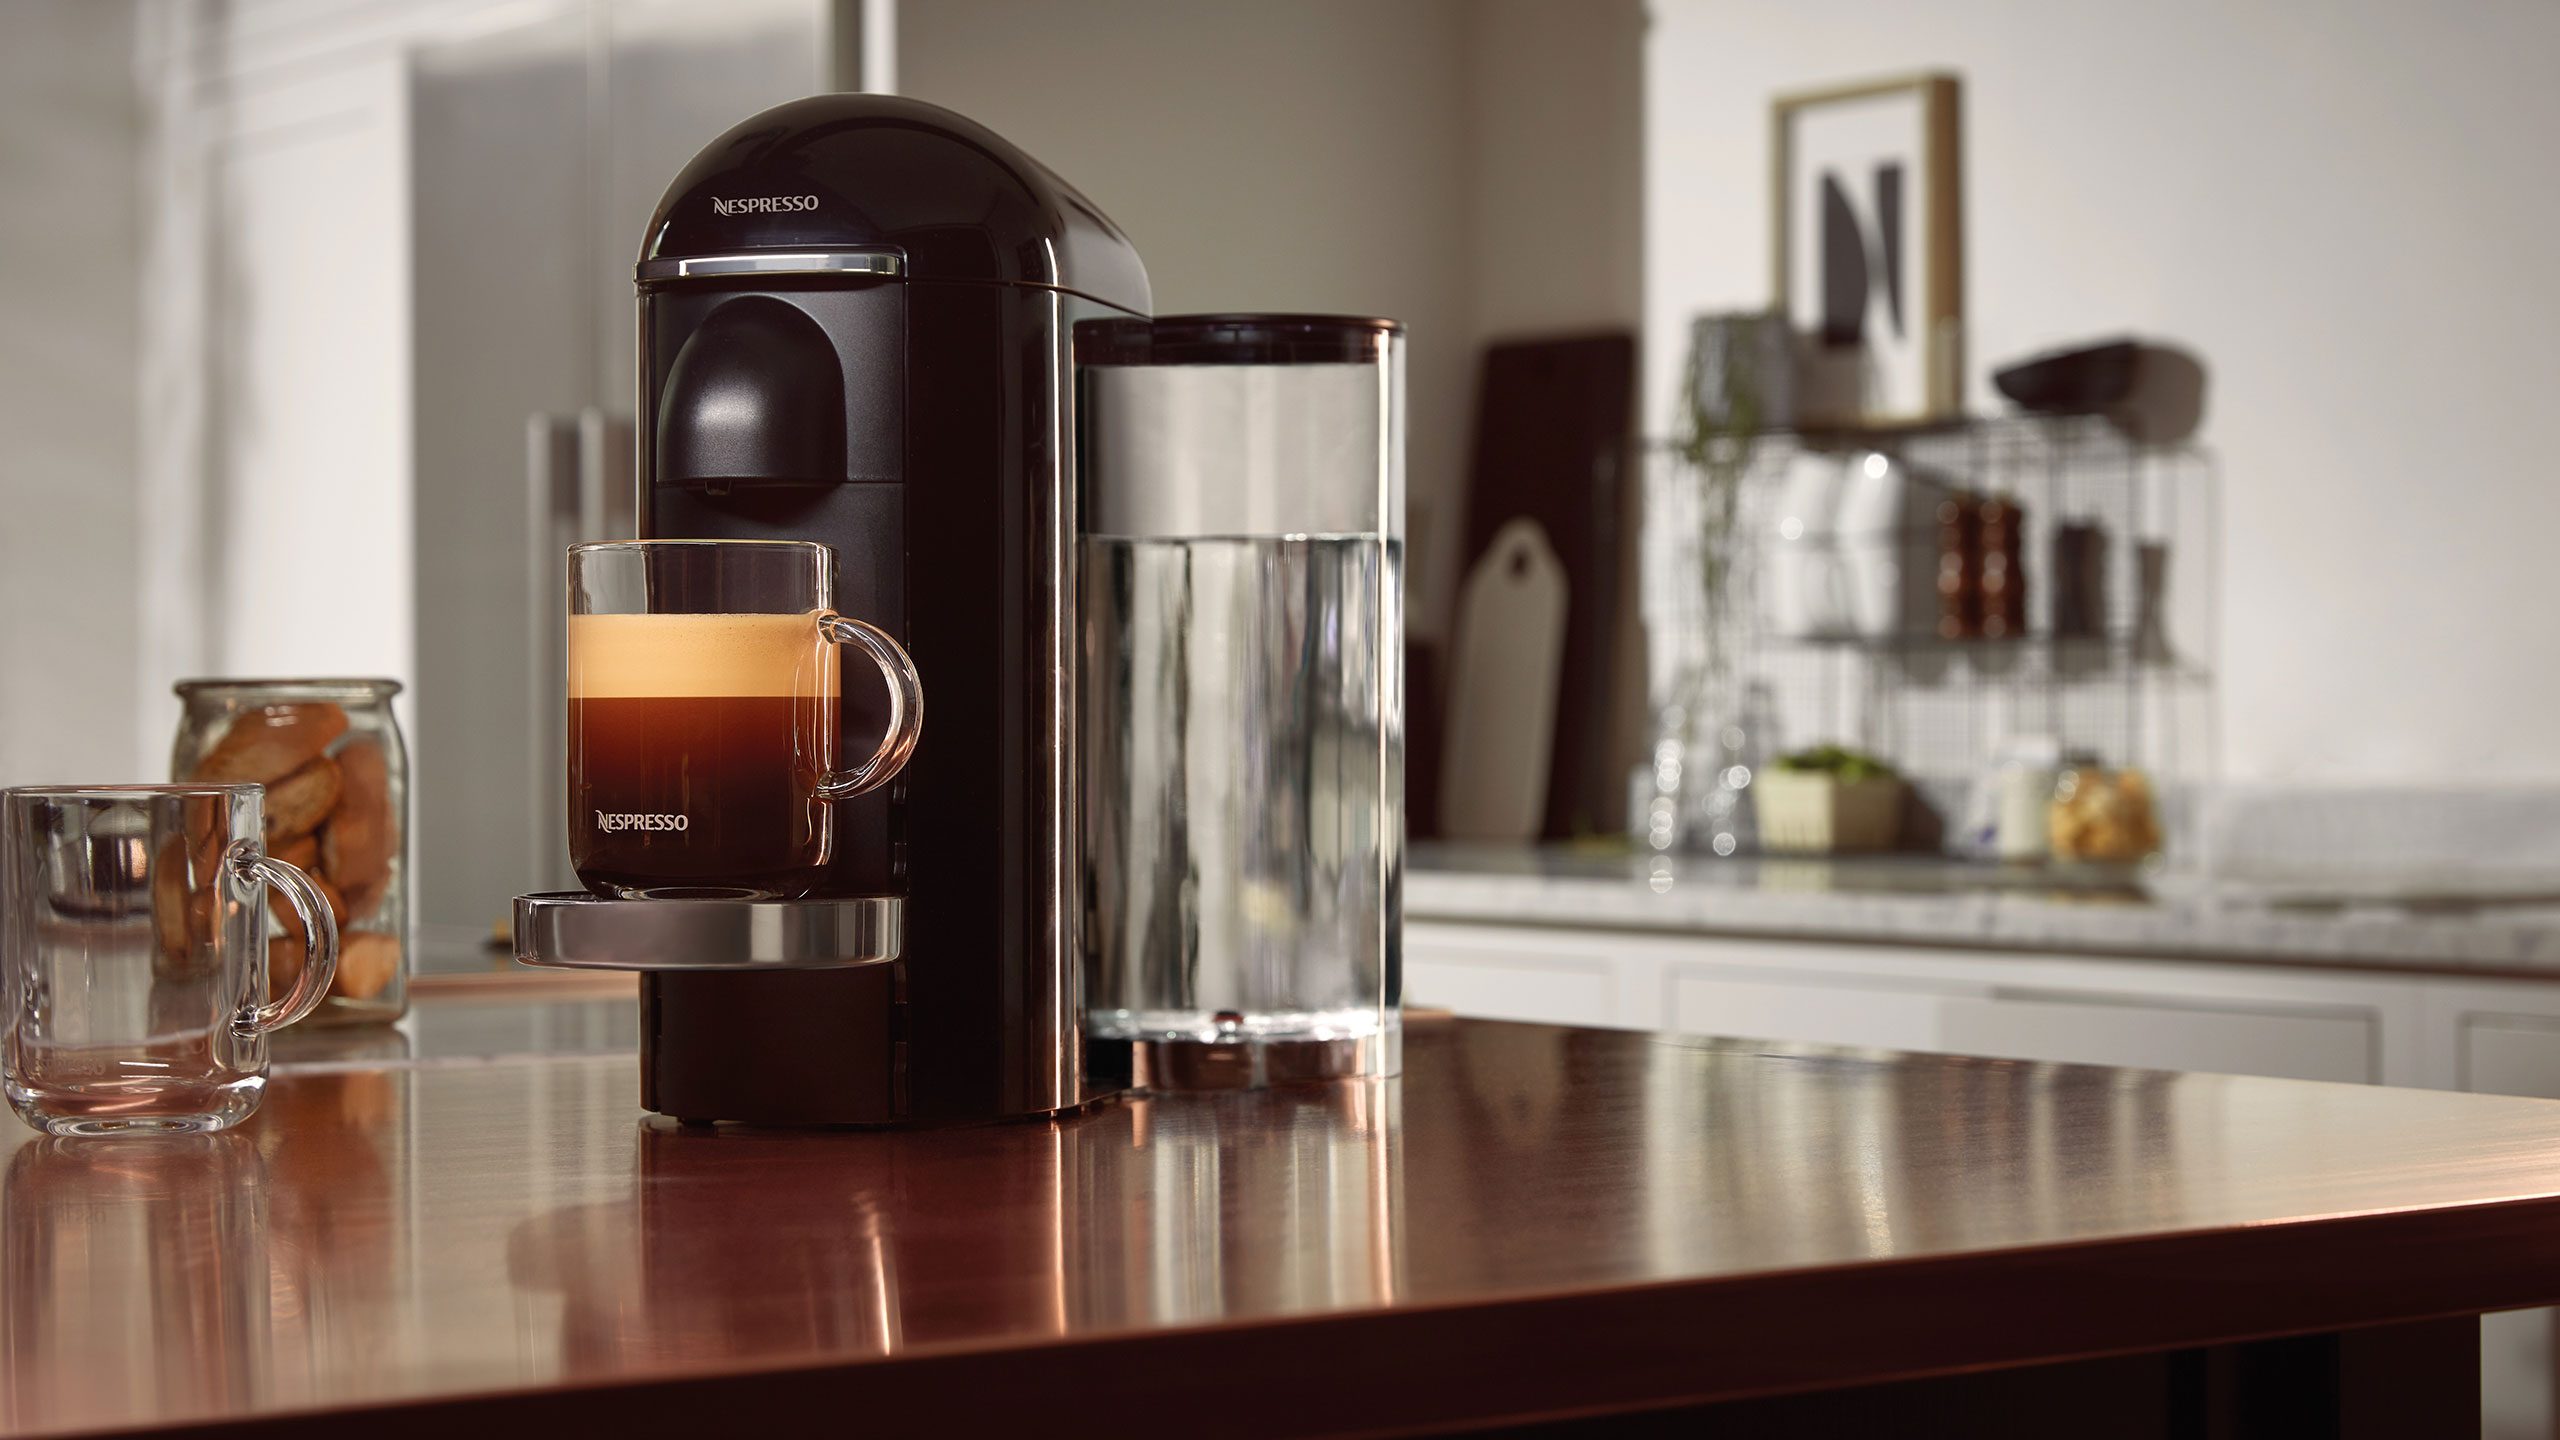 Portiek machine lobby Nespresso Vertuo gepresenteerd: koffiezetapparaat met grotere cupjes | FWD